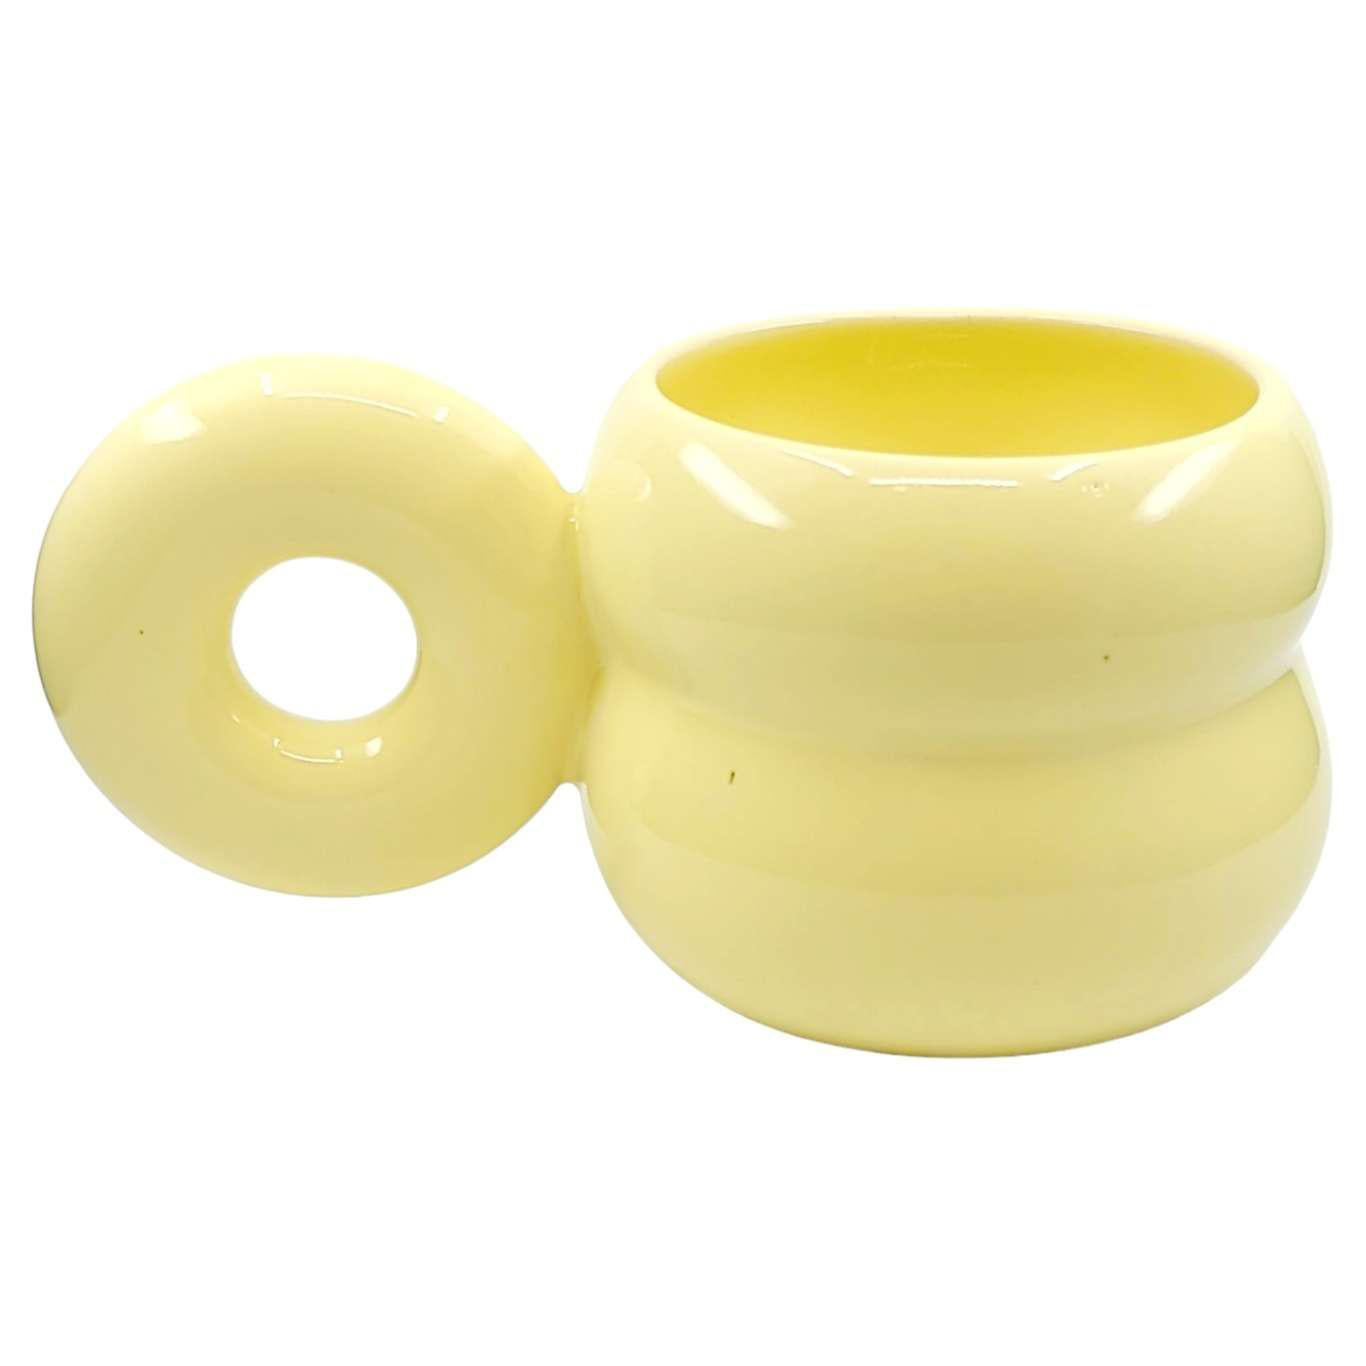 Mug - Yellow Small Chubby Donut Mug by MUD WITCH